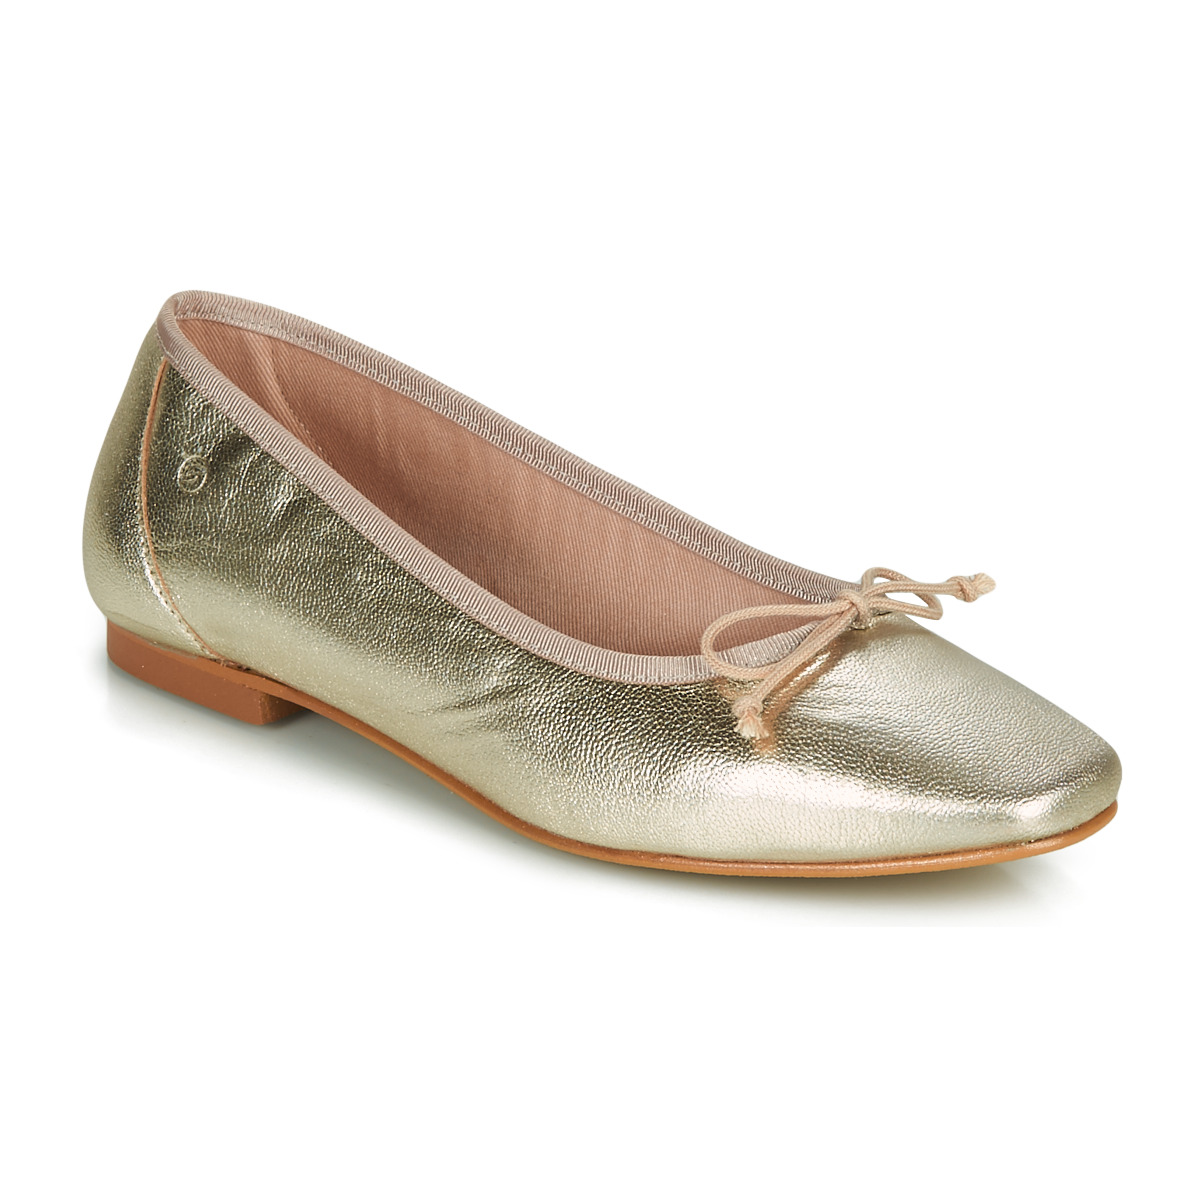 Zapatos Mujer Bailarinas-manoletinas Betty London ONDINE Oro